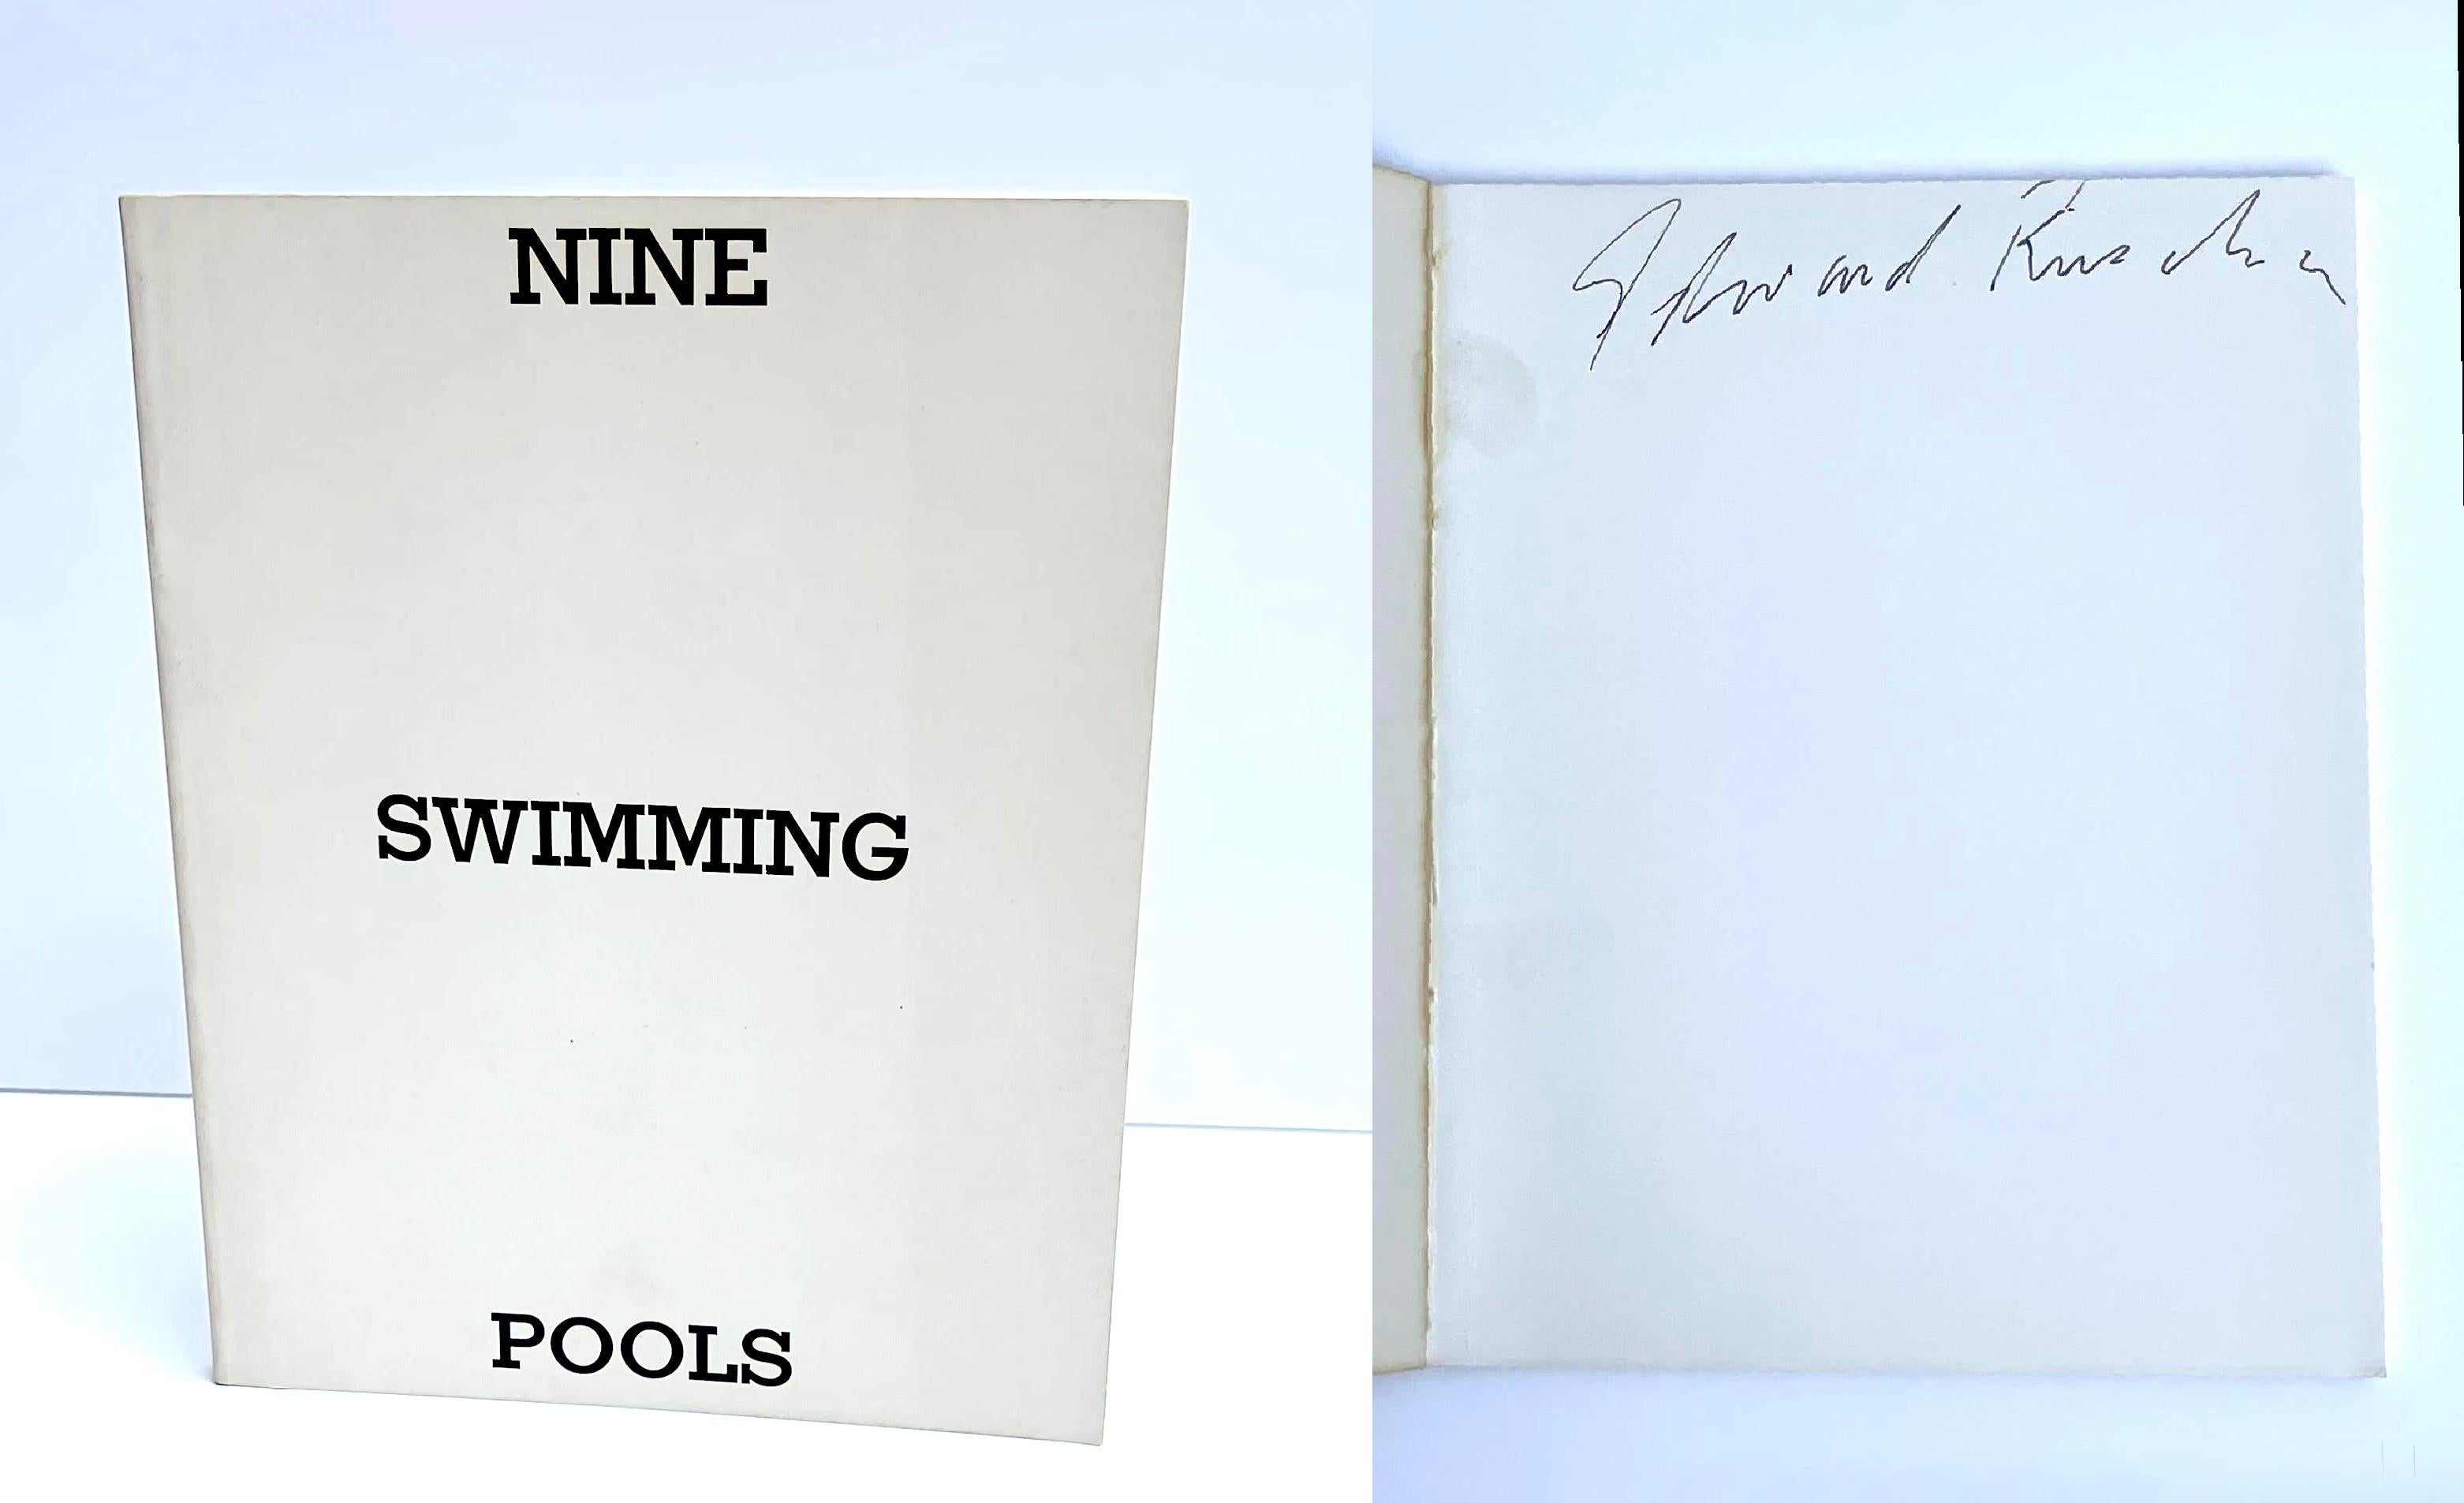 Ed Ruscha
Neuf piscines et un verre cassé (SIGNÉ À LA MAIN), 1976
Livre d'artiste à édition limitée
Signé par Ed Ruscha sur la première page de garde.
7 × 5 1/2 pouces
Il s'agit de la deuxième édition (1976), publiée dans un tirage limité à 2000